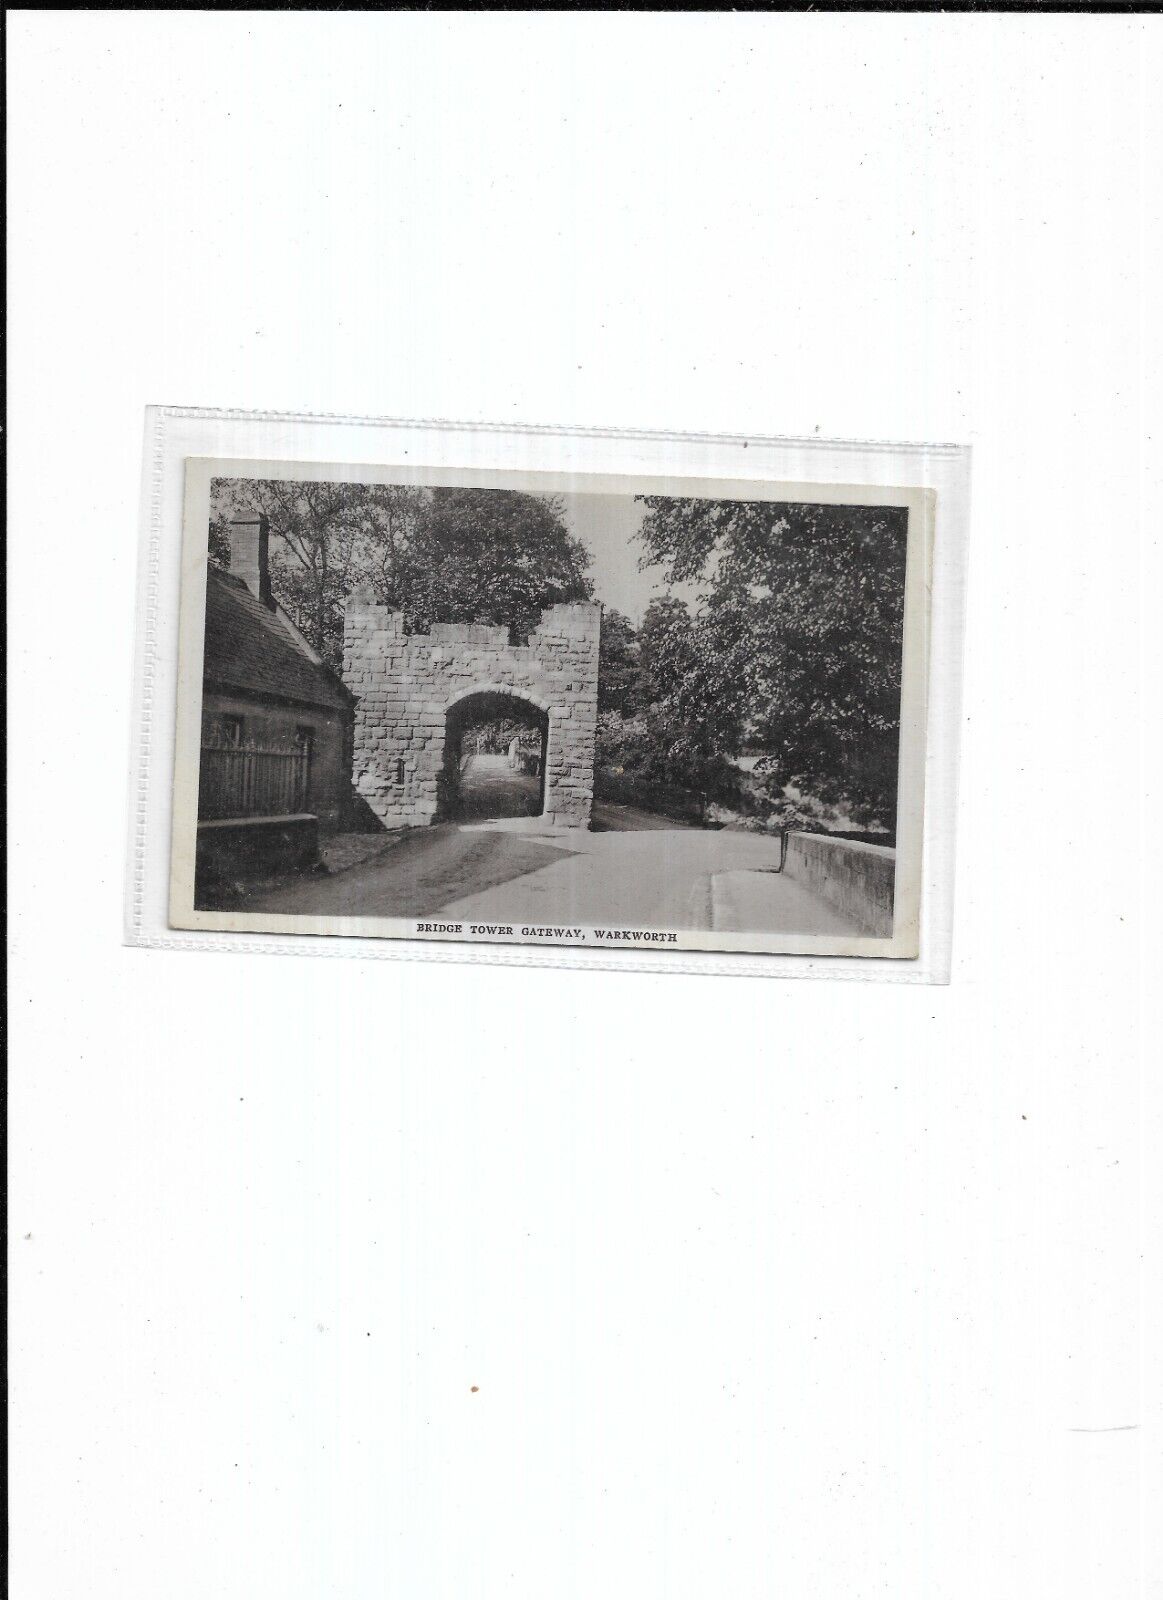 Northumberland Service 69 "Bridge Tower Gateway, Warkworth" Date Unknown